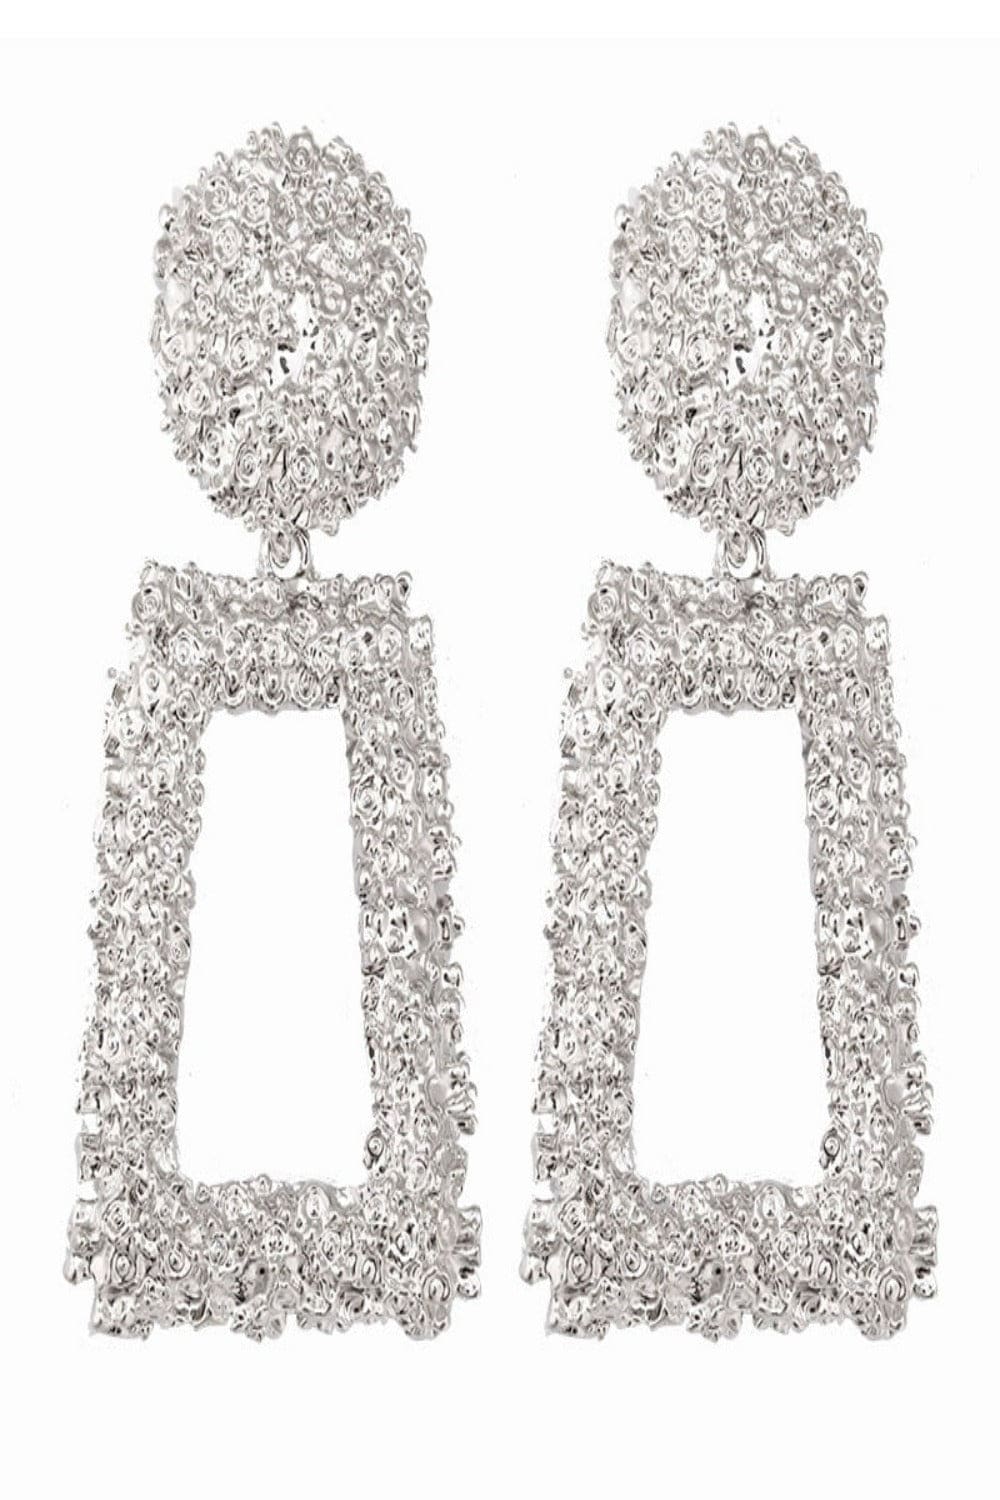 Chunky Statement Dangle Door Knocker Earrings - Silver - TGC Boutique - Earrings